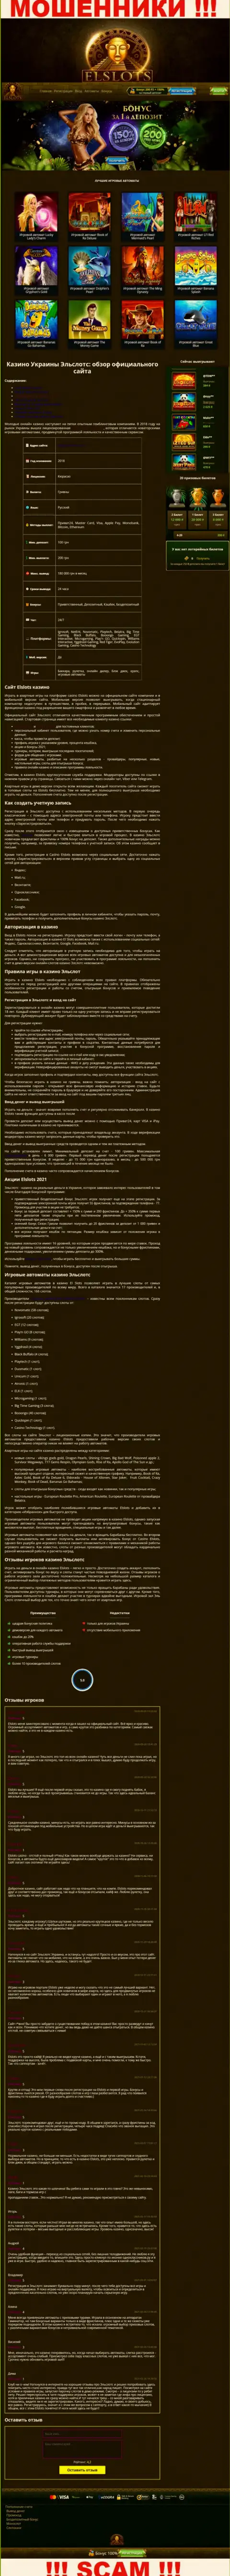 Внешний вид официальной web-страницы жульнической организации El Slots